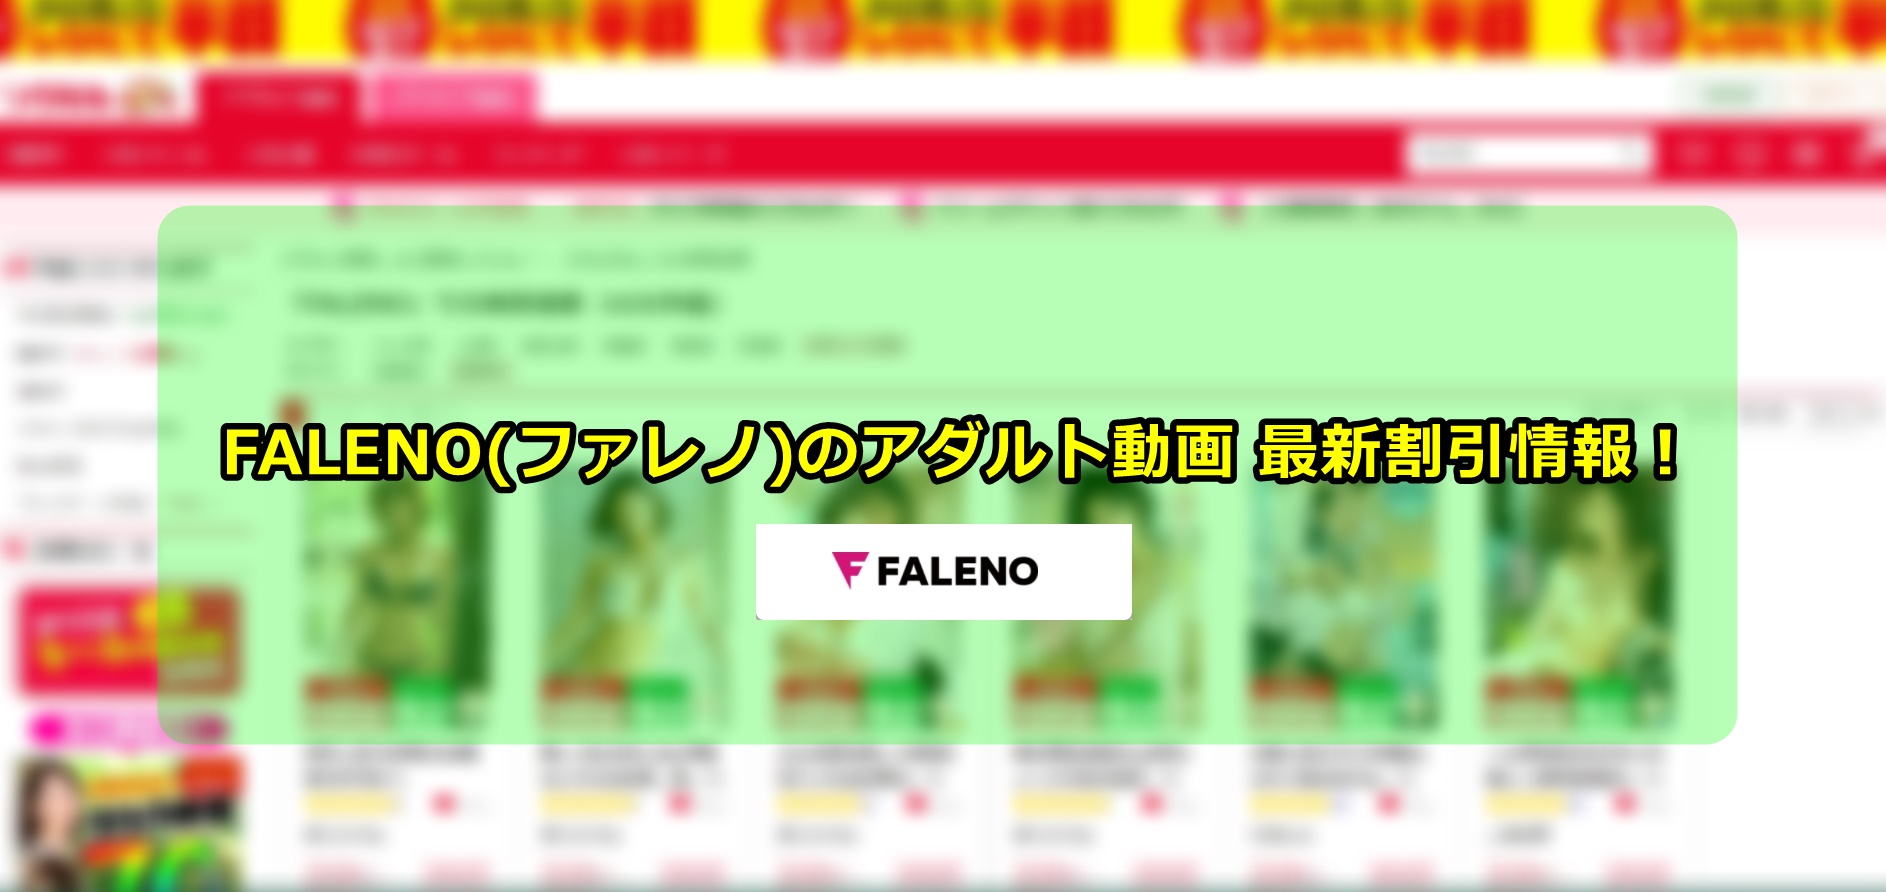 FALENO(ファレノ)のアダルト動画（AV）を割引、最安値で購入する方法とは？